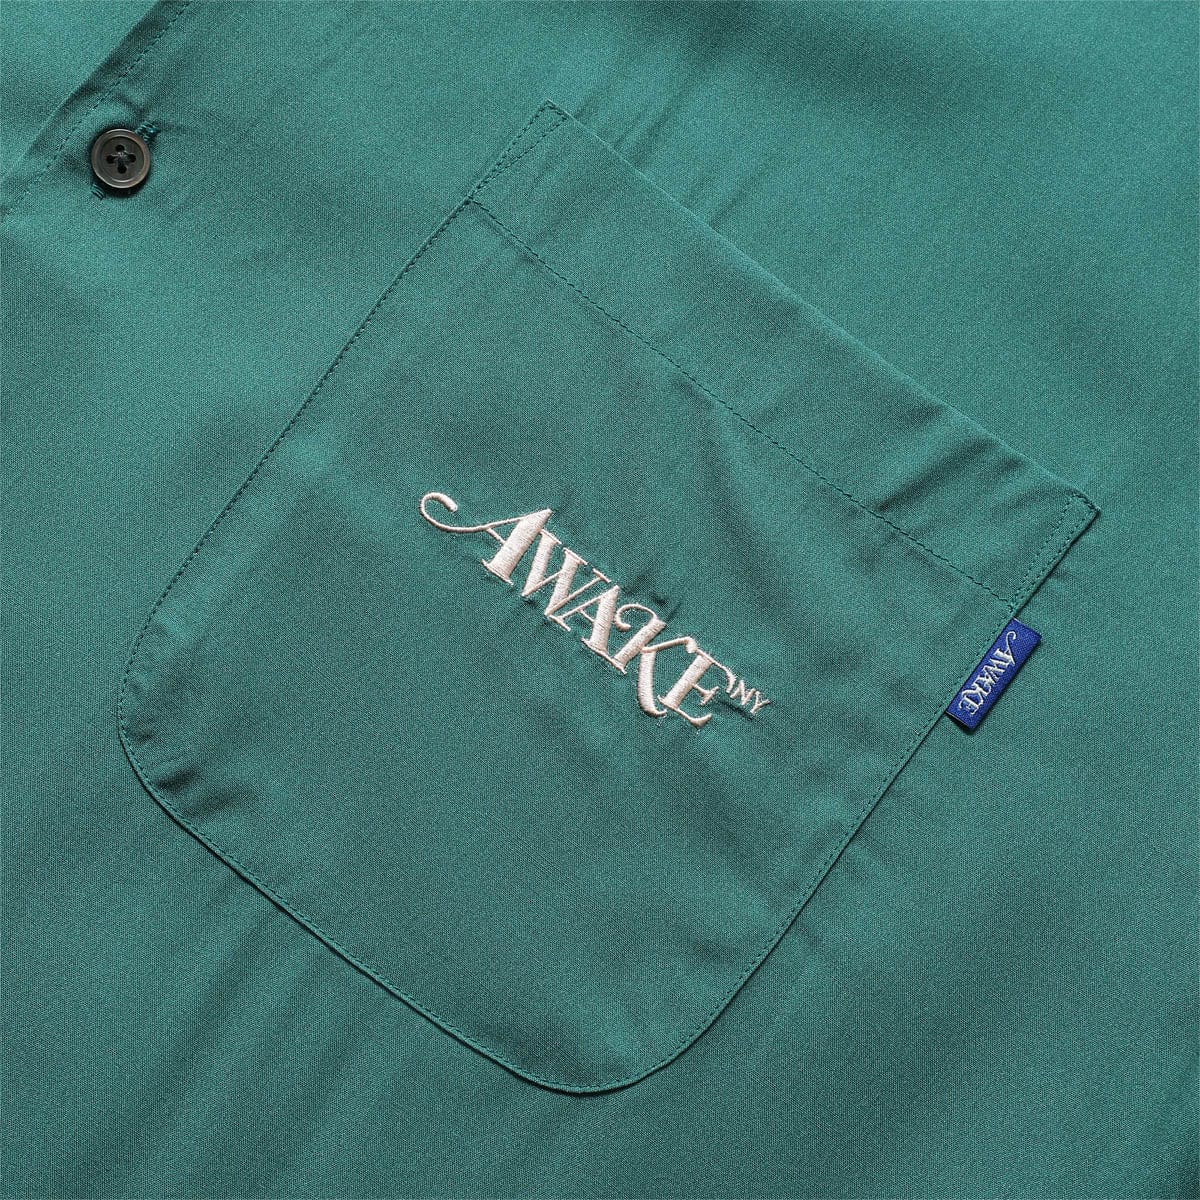 Awake NY Shirts DICE PRINTED RAYON CAMP SHIRT